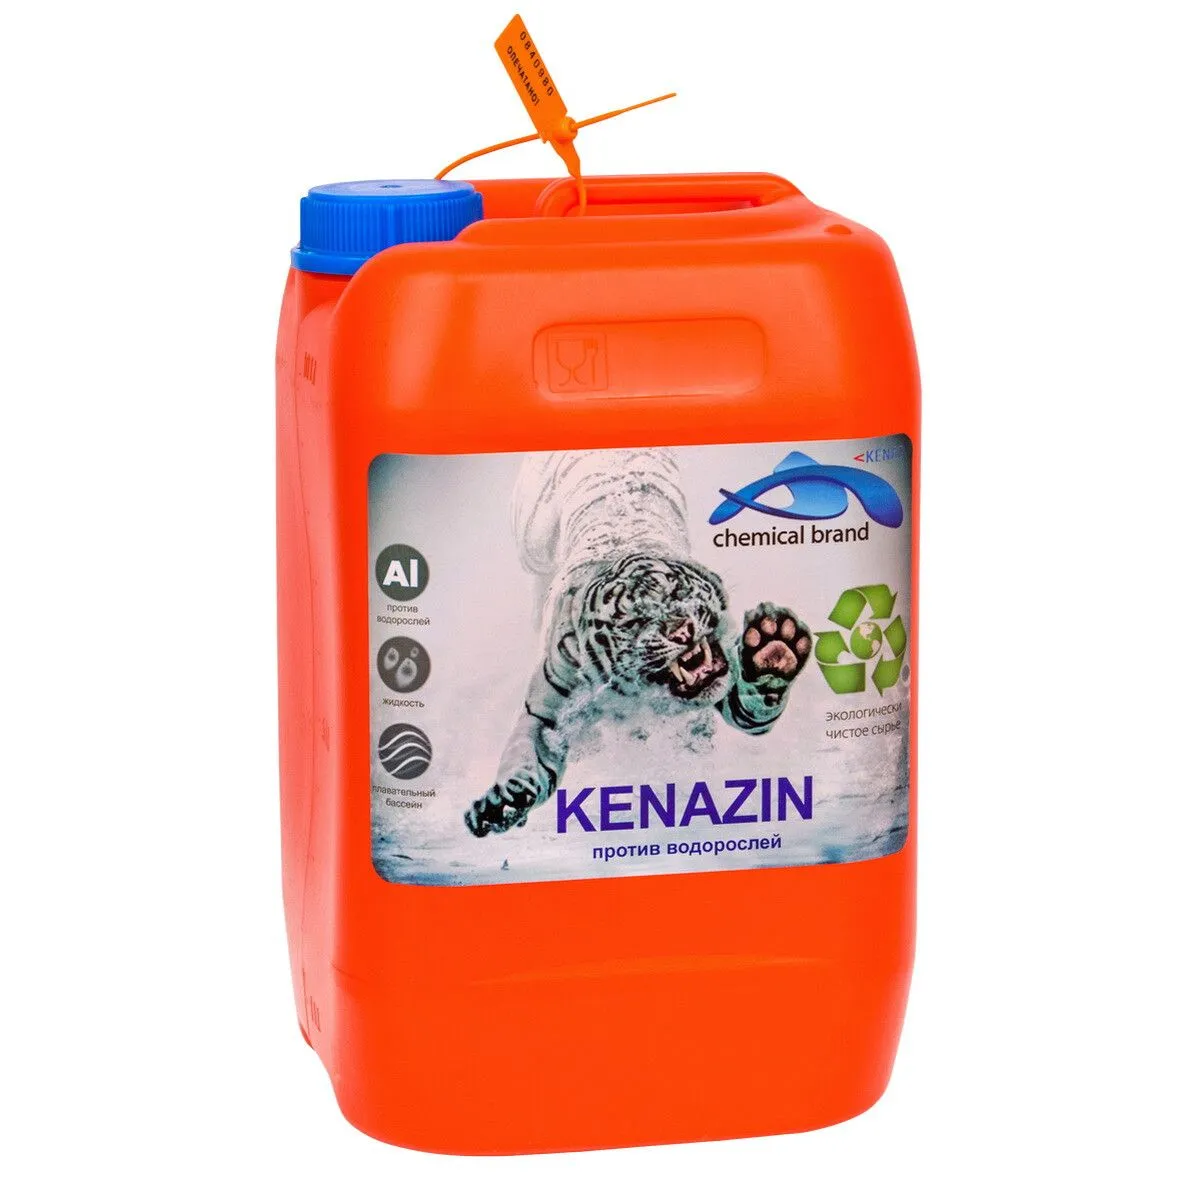 Жидкое средство для удаления плесени и водорослей Kenaz Kenazin непенящийся от магазина gidro-z